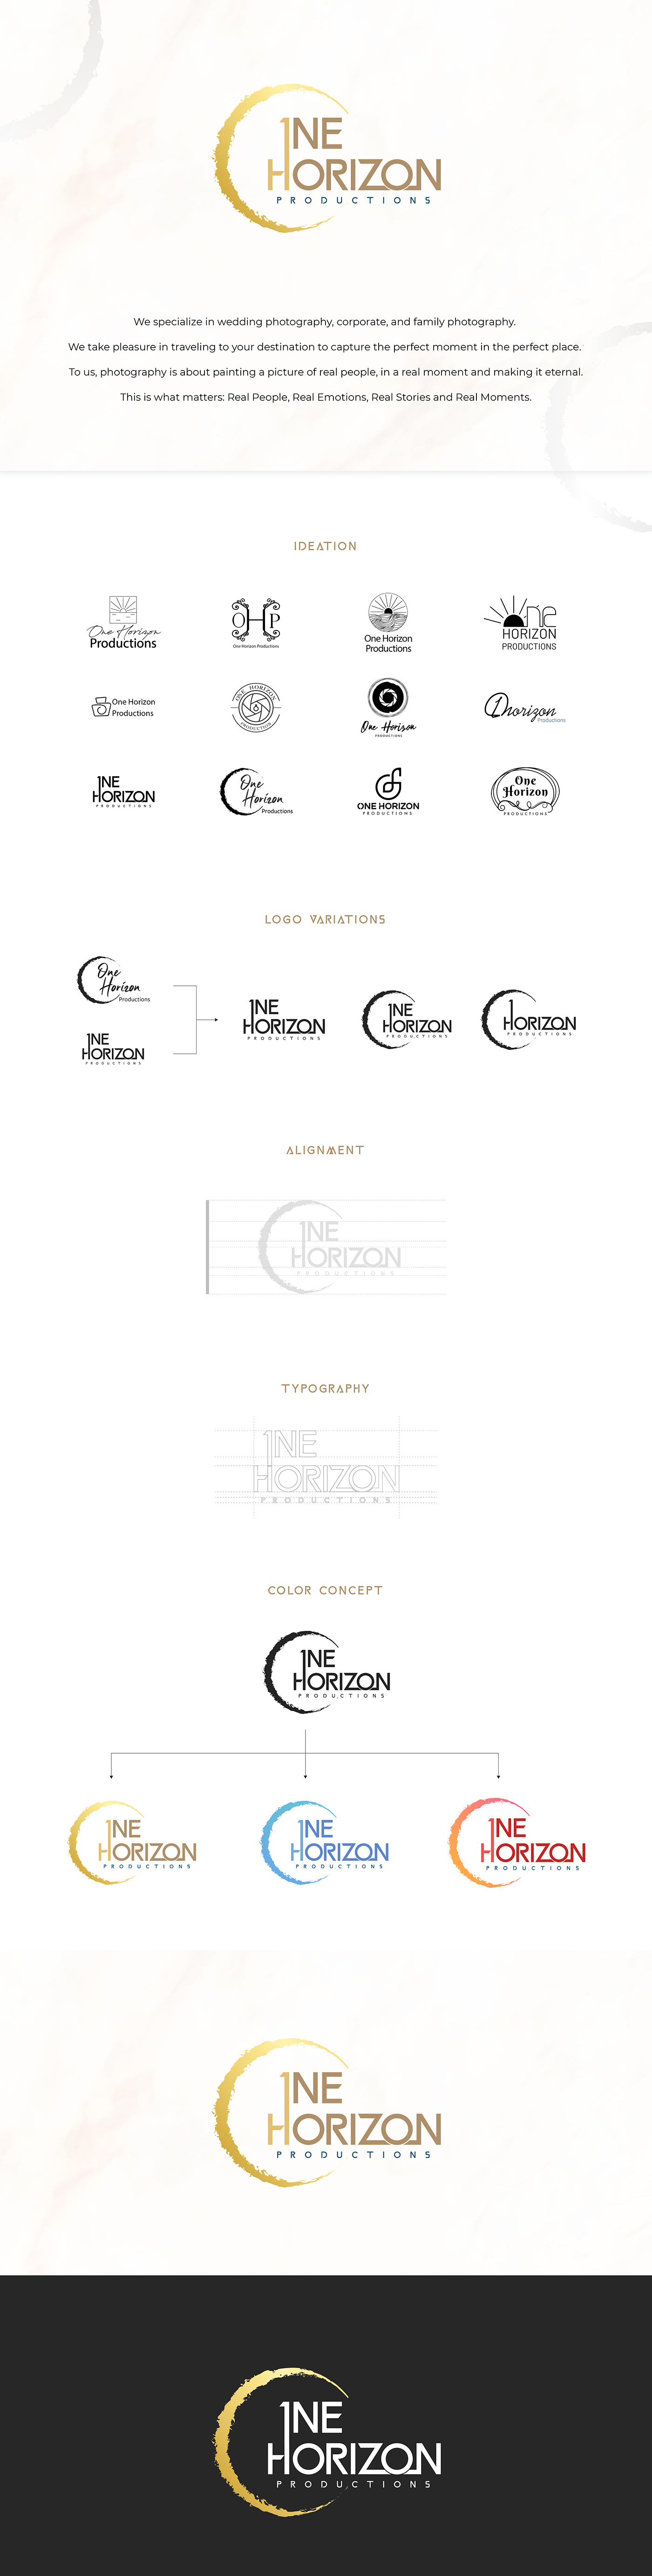 brand identity logo logo animation Logo Design One horizon productions